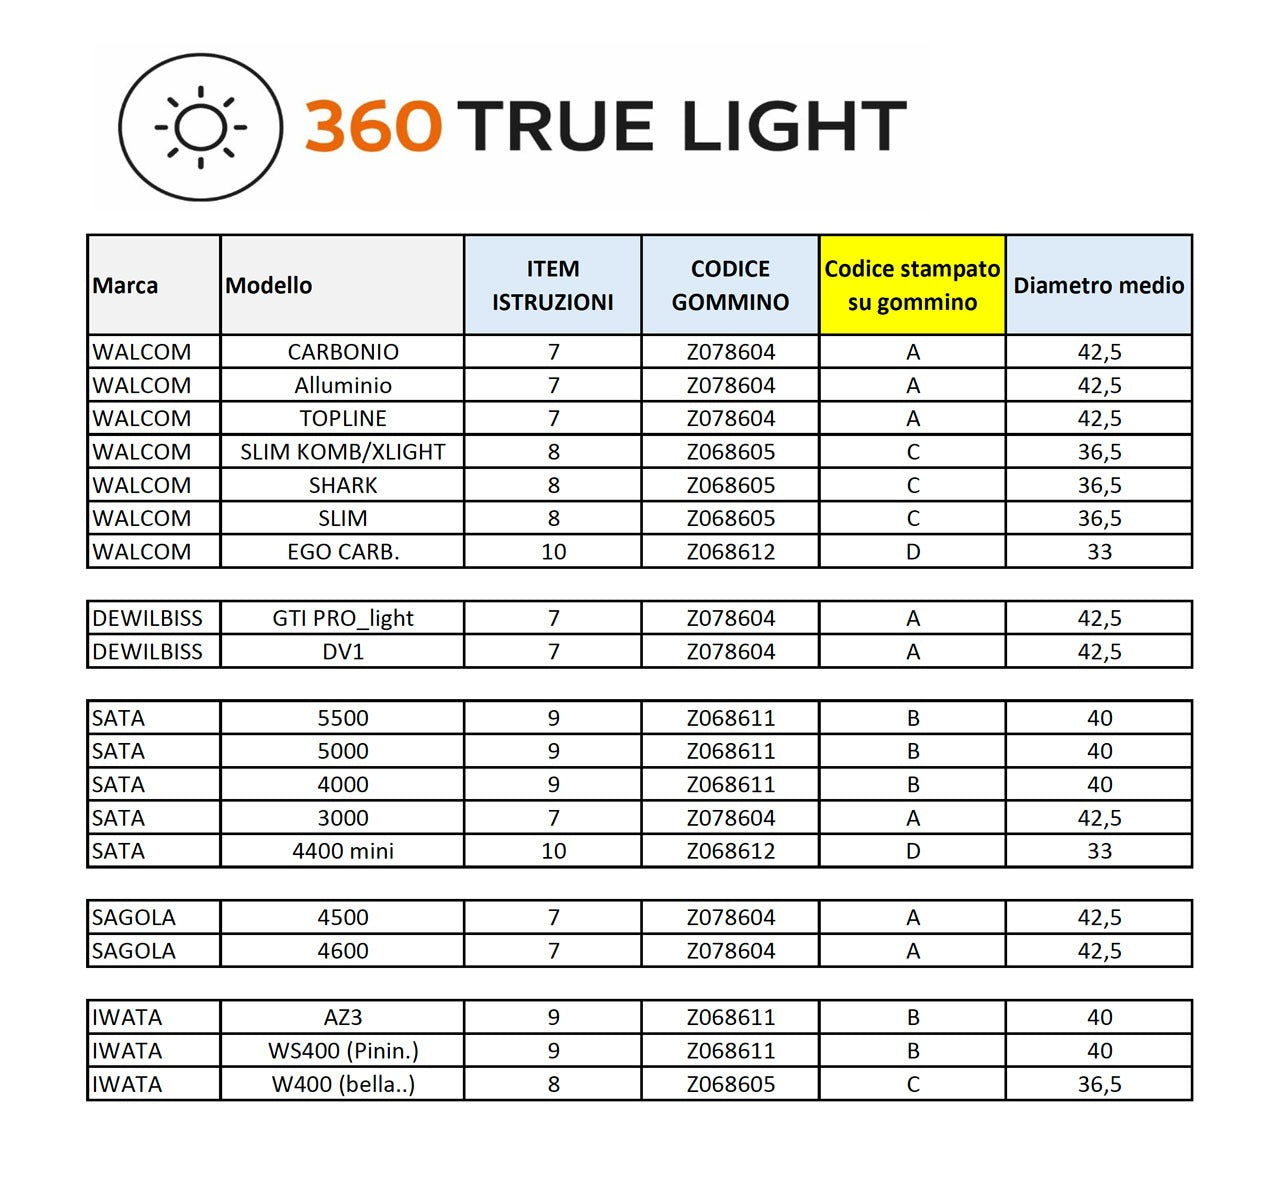 360 True Light